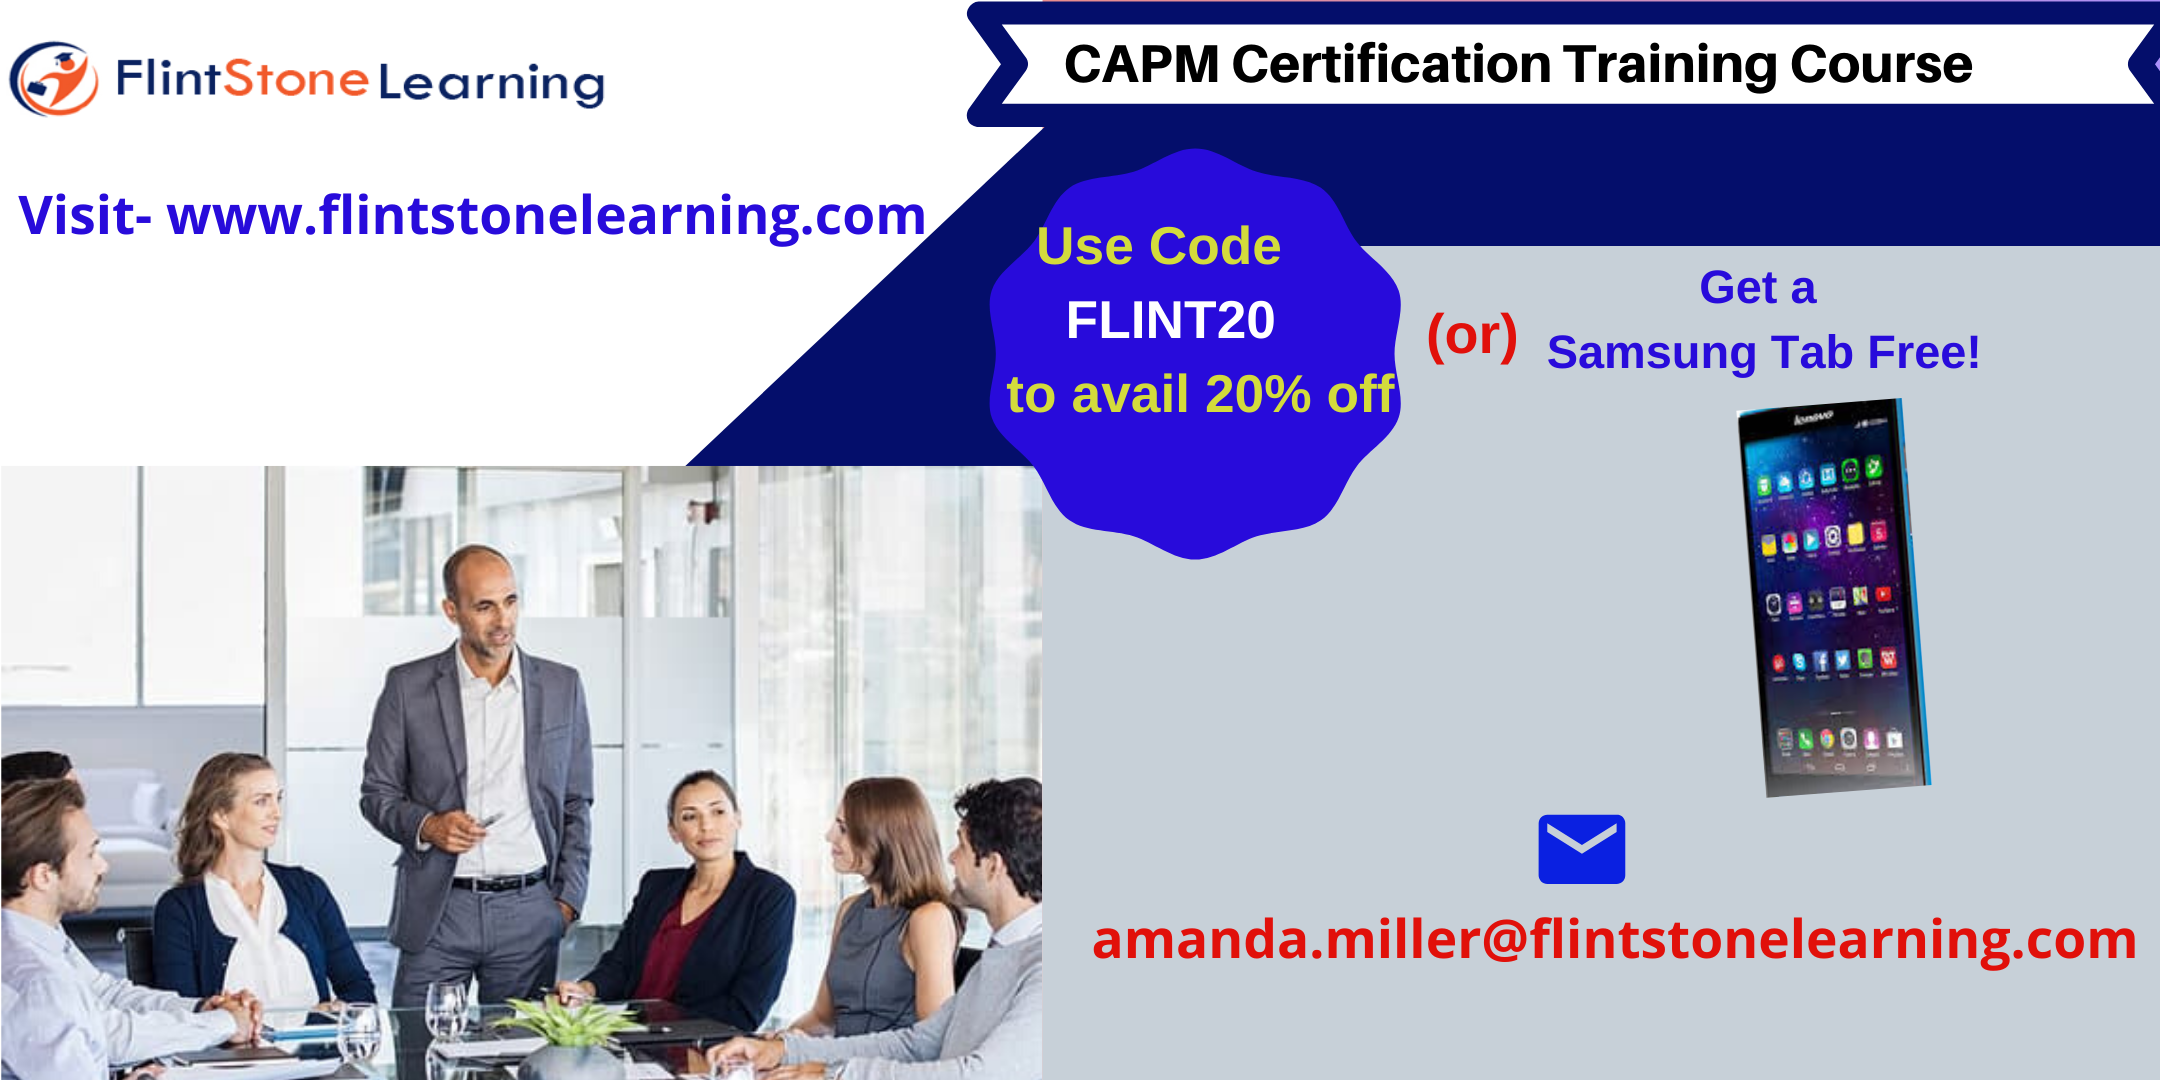 CAPM Certification Training Course in La Canada Flintridge, CA